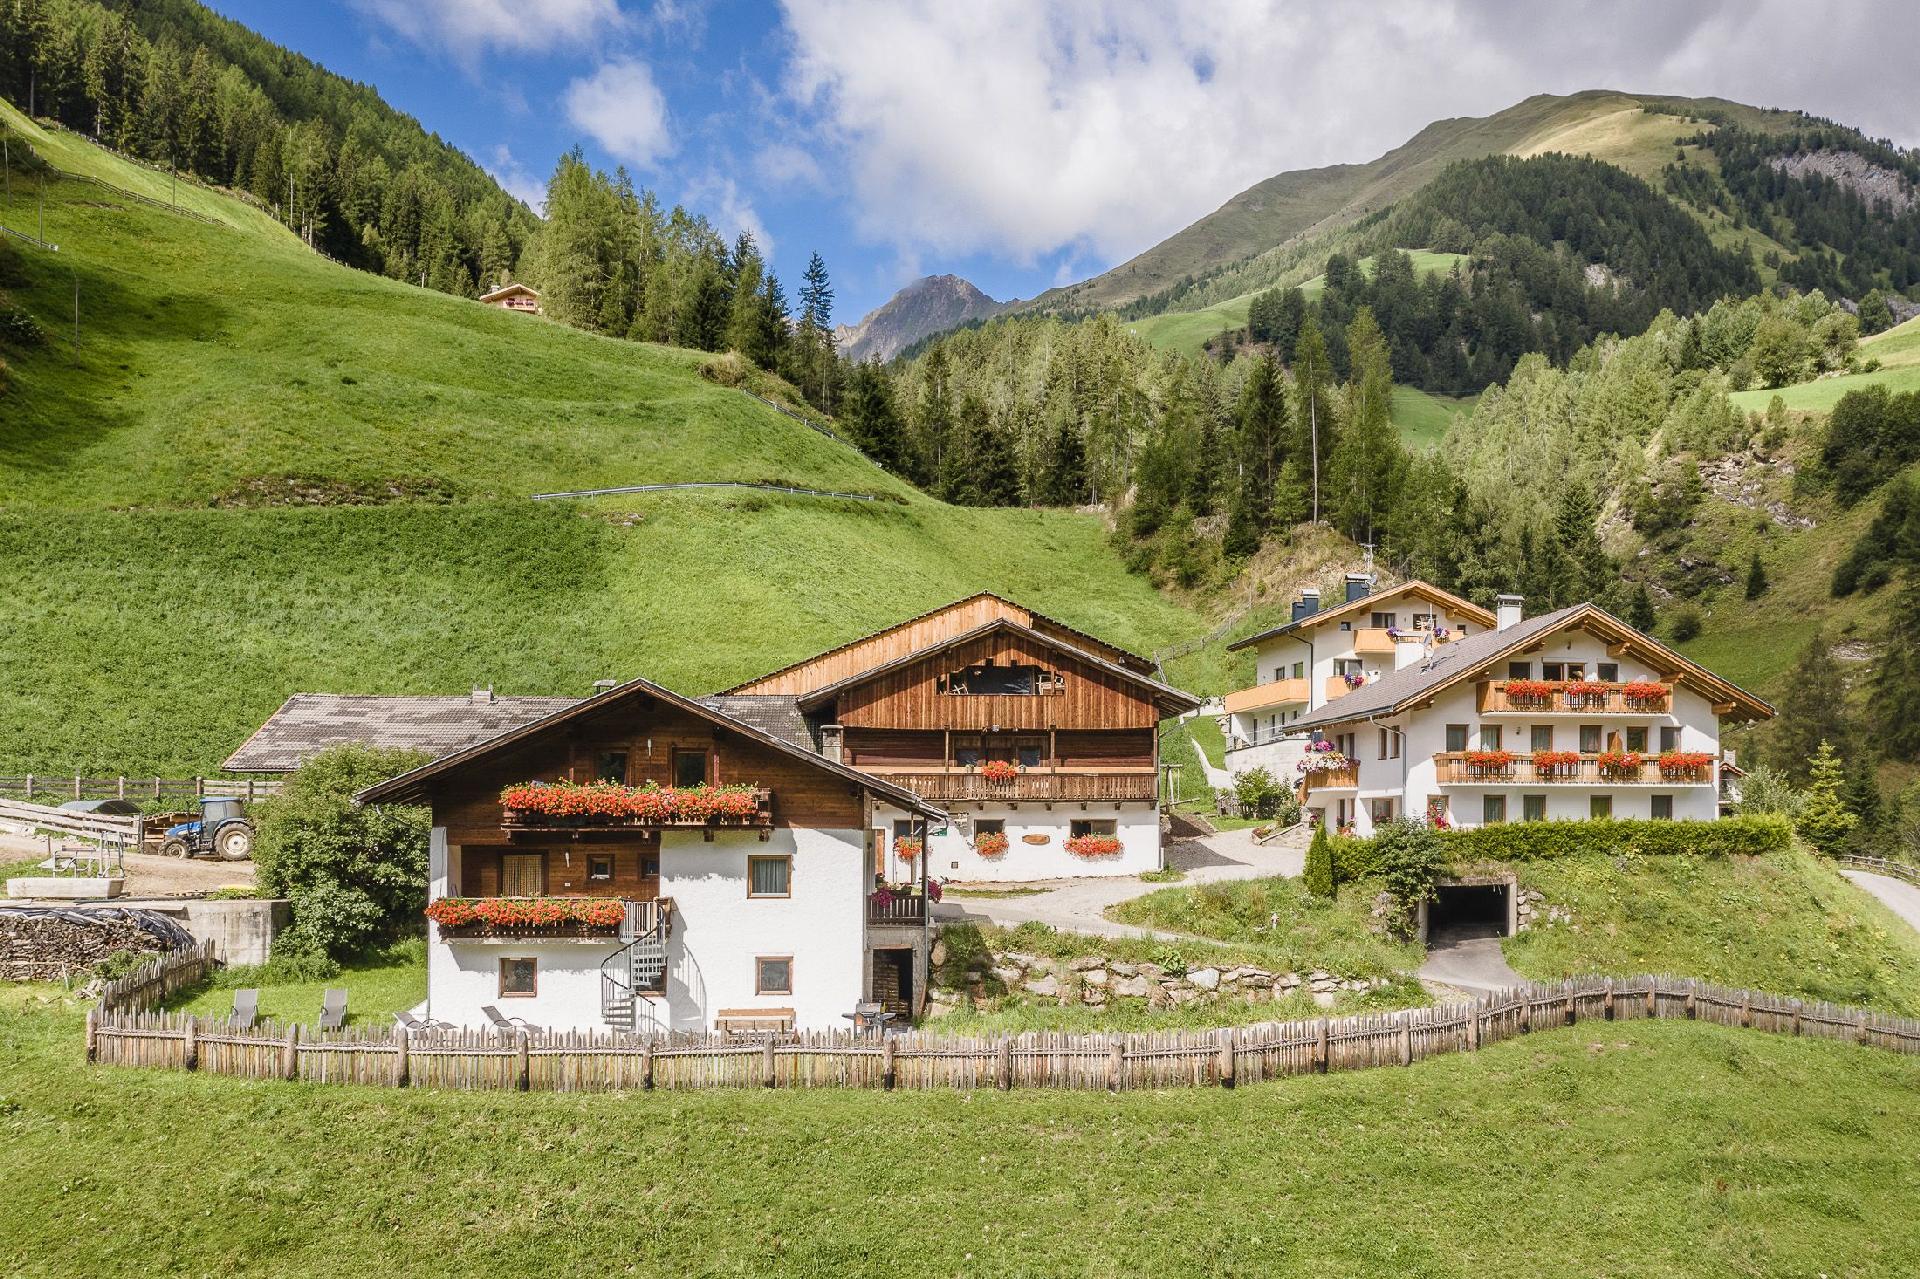 Ferienwohnung in schöner Bergkulisse mit zwei Bauernhof in Italien